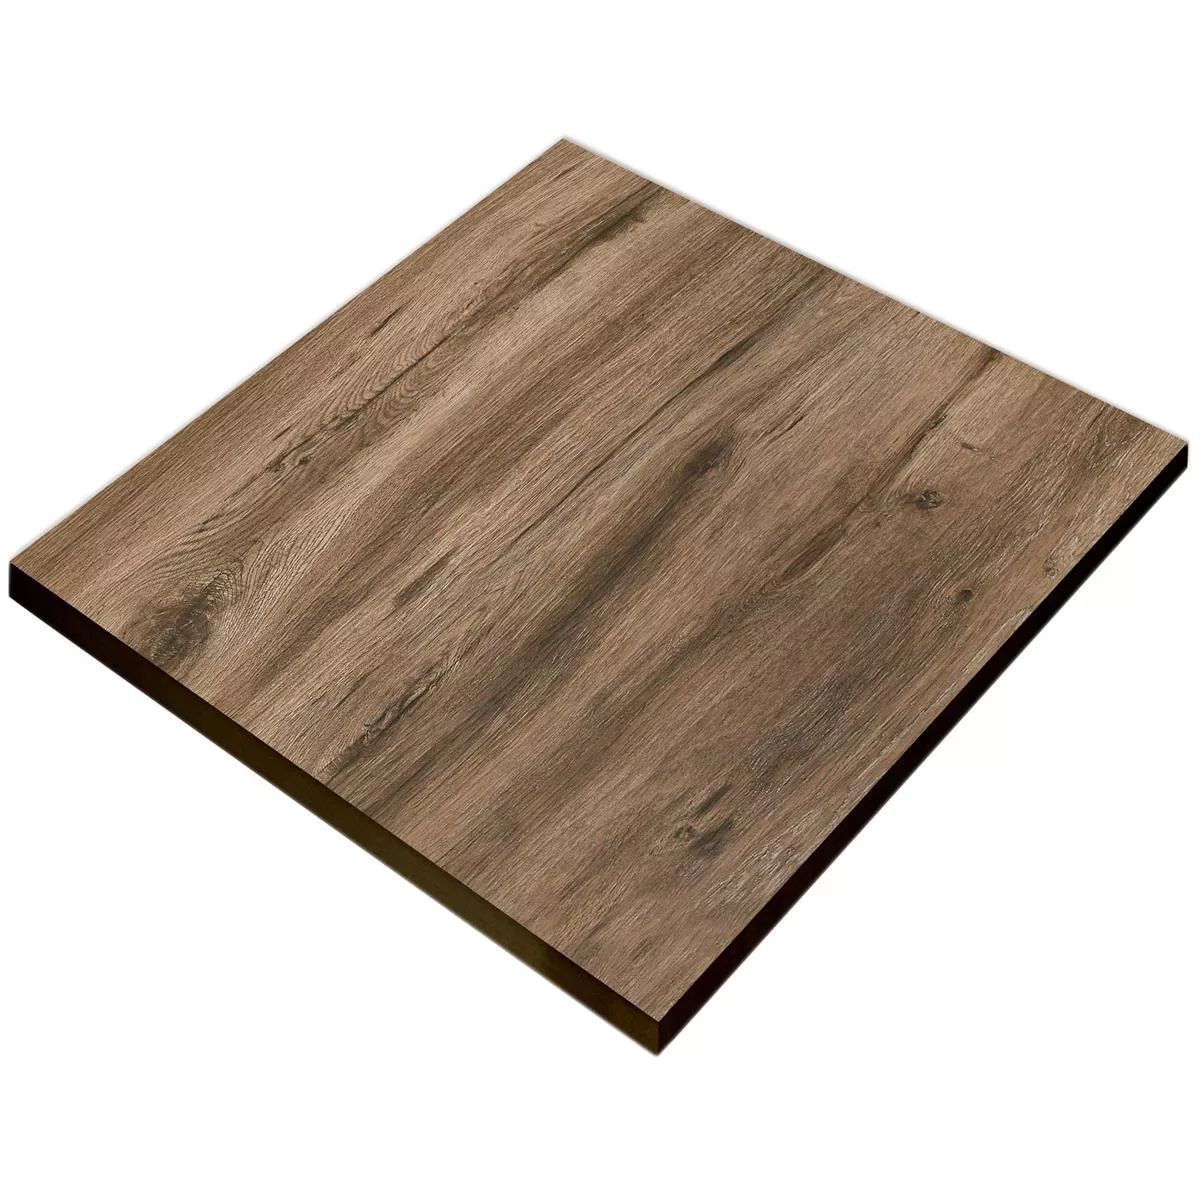 Terrassenplatten Starwood Holzoptik Ebony 60x60cm